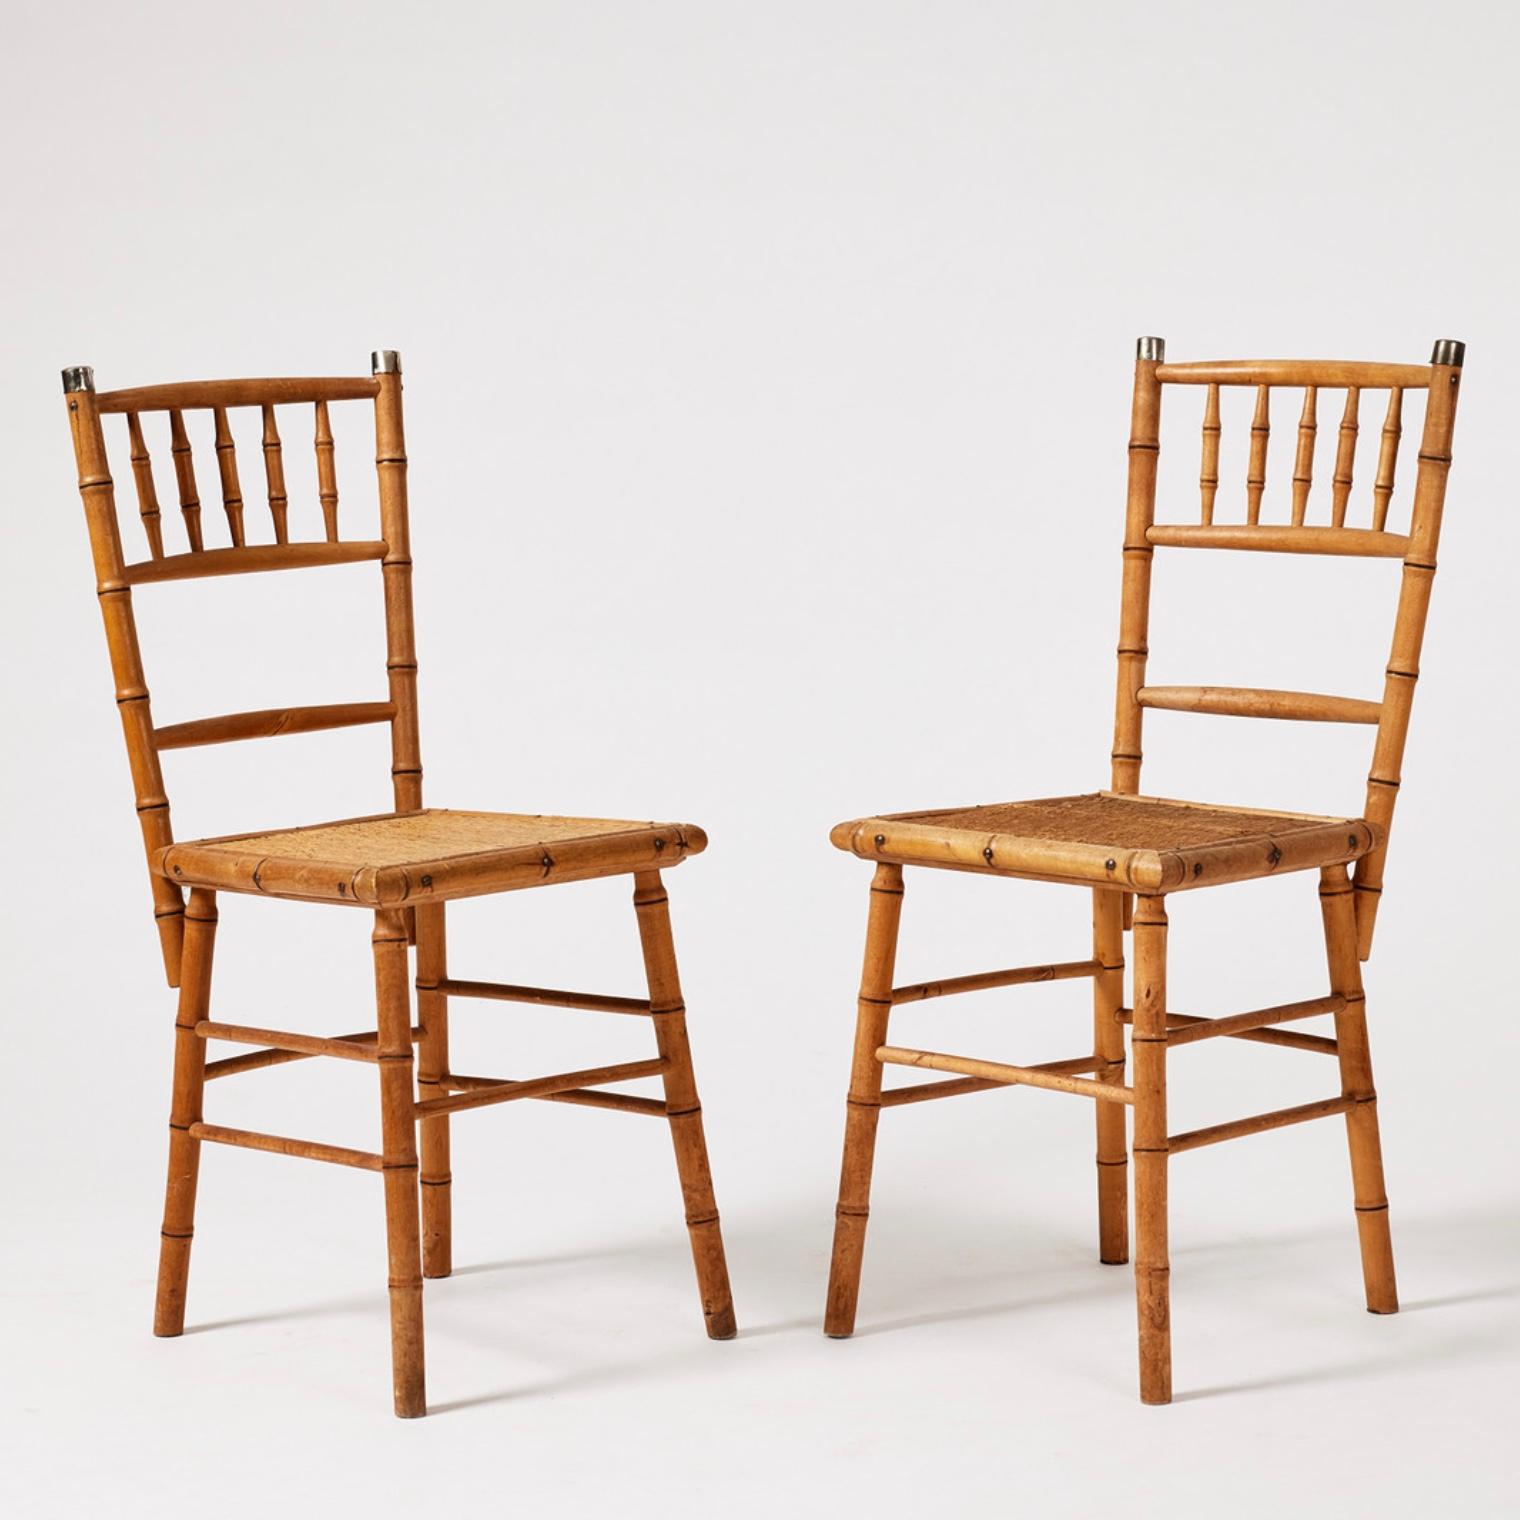 Ensemble de quatre chaises de salle à manger en faux bambou et hêtre, datant de la fin du CIRCA, fabriquées pour Bodafors. Les sièges sont recouverts d'une natte de jonc dans le style japonais.
Usure et détérioration correspondant à leur âge et à